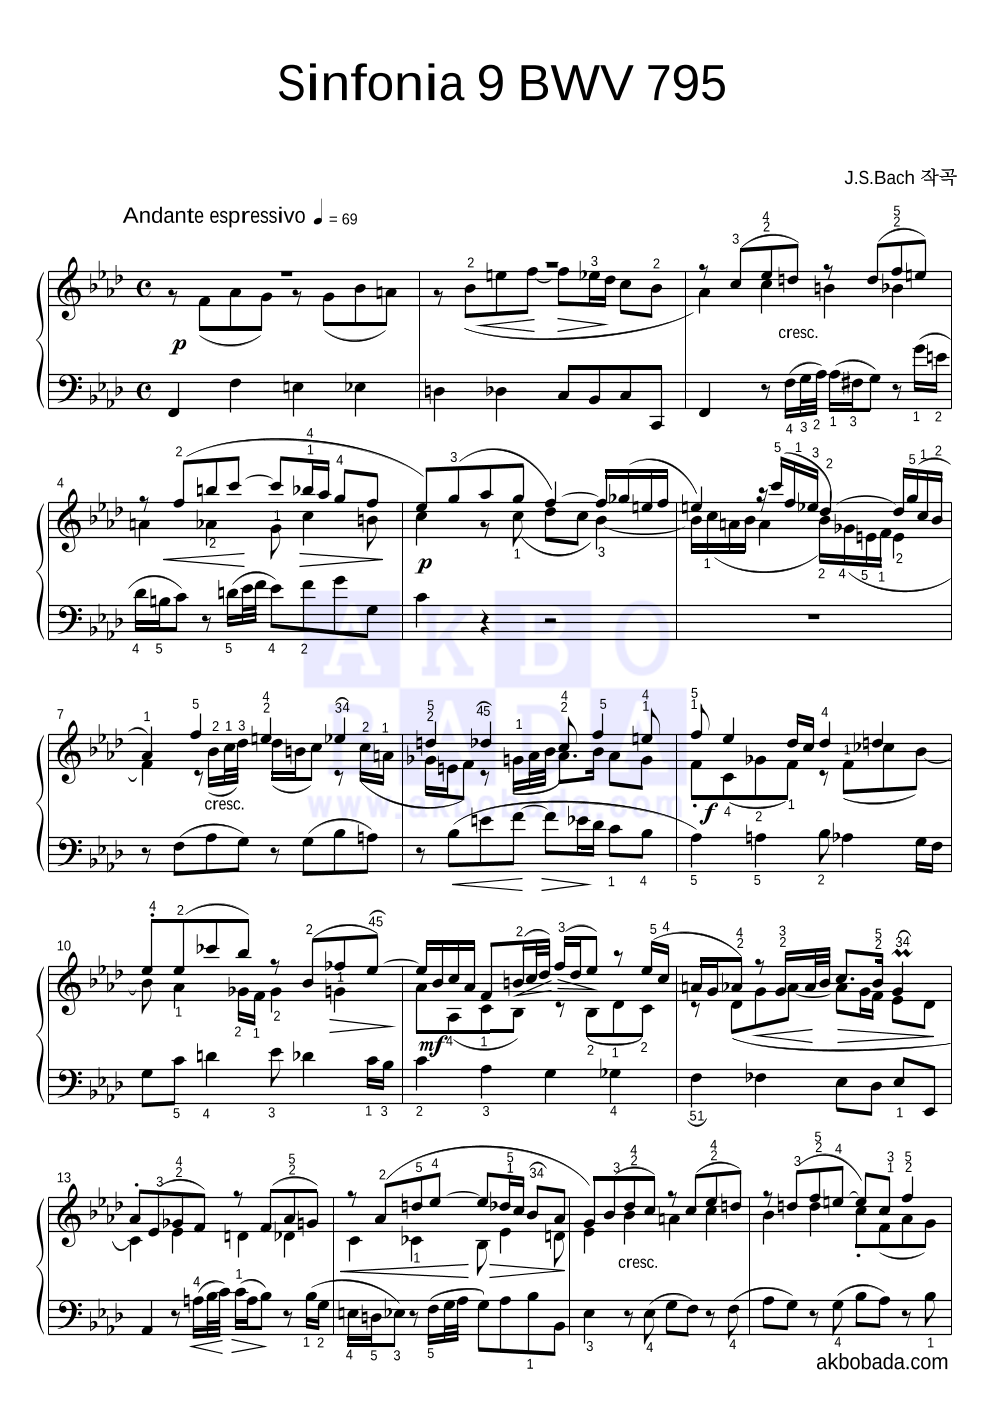 바흐 - Sinfonia 9 BWV 795 피아노 2단 악보 